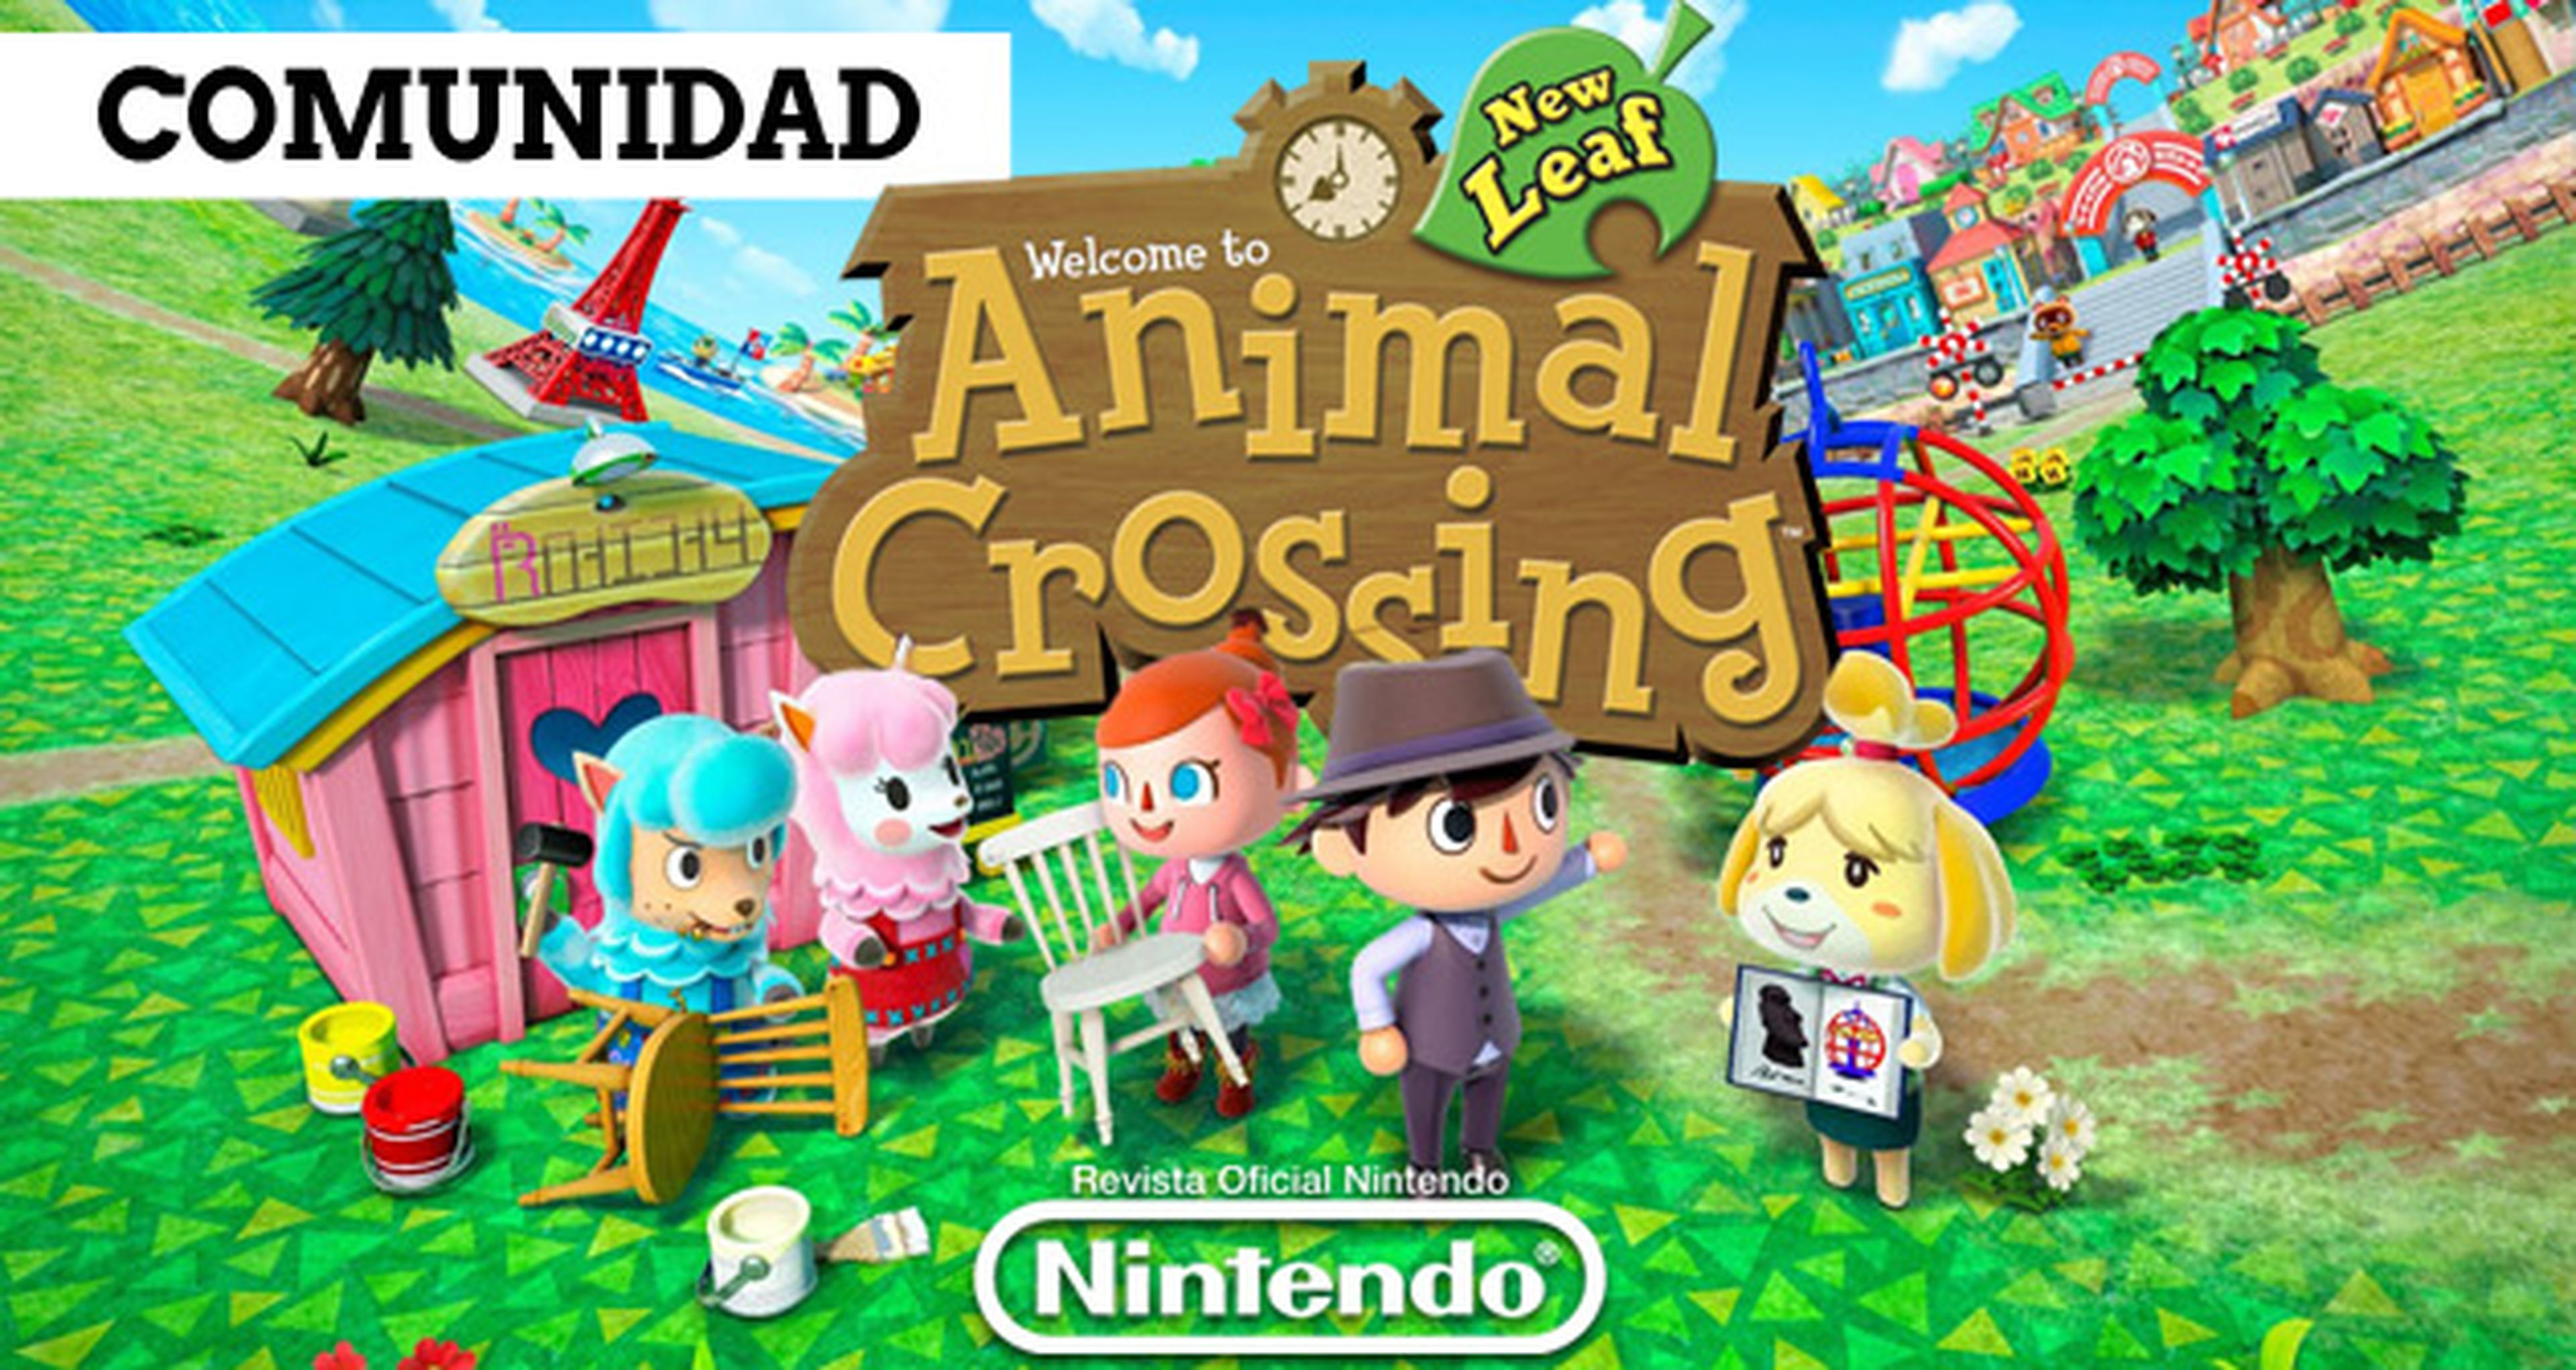 Entra en la comunidad Animal Crossing de Revista Oficial Nintendo